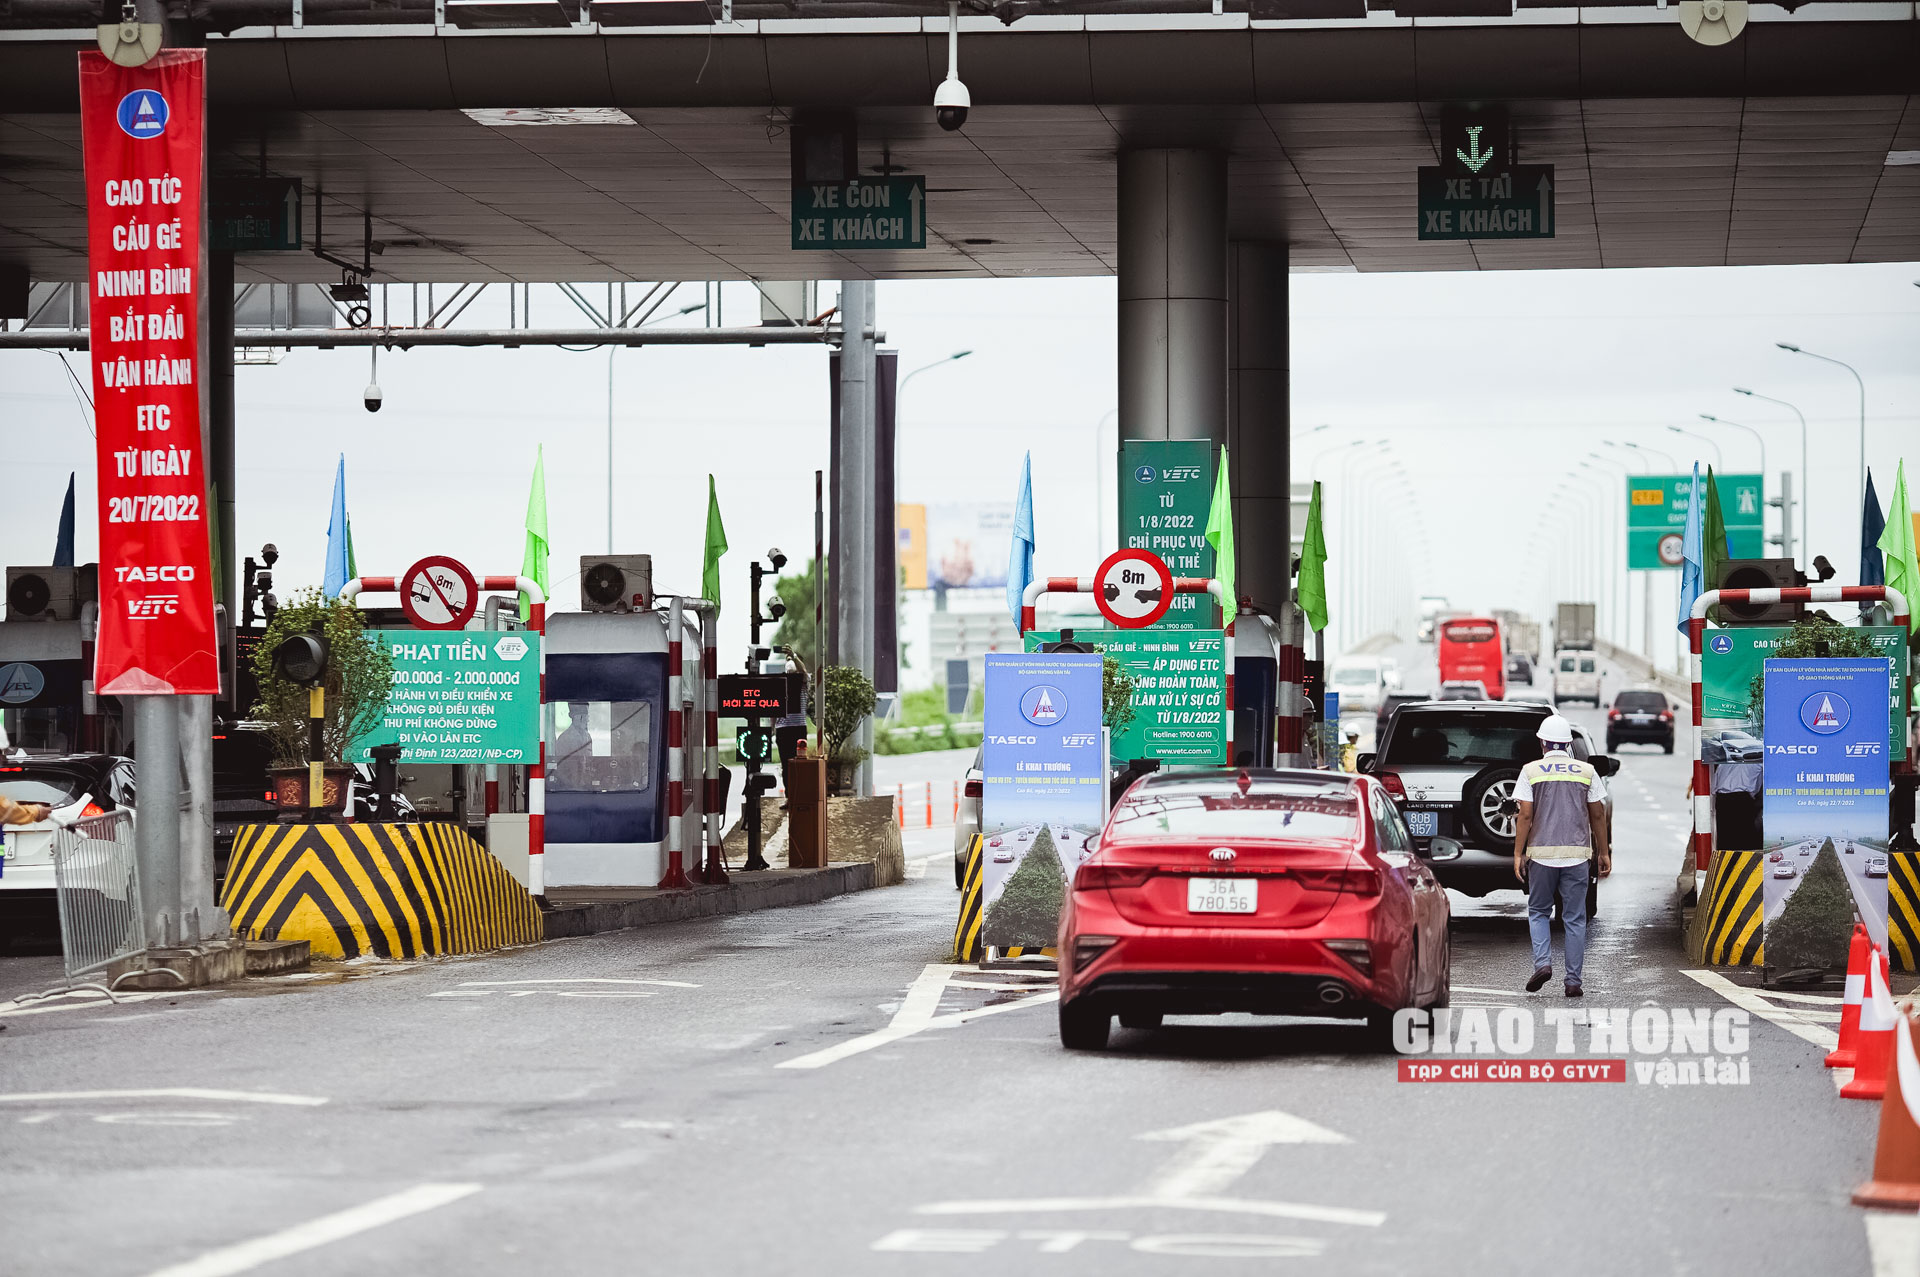 Ảnh minh họa: Xe lưu thông trên làn ETC qua trạm thu phí Cao Bồ, cao tốc Cầu Giẽ - Ninh Bình